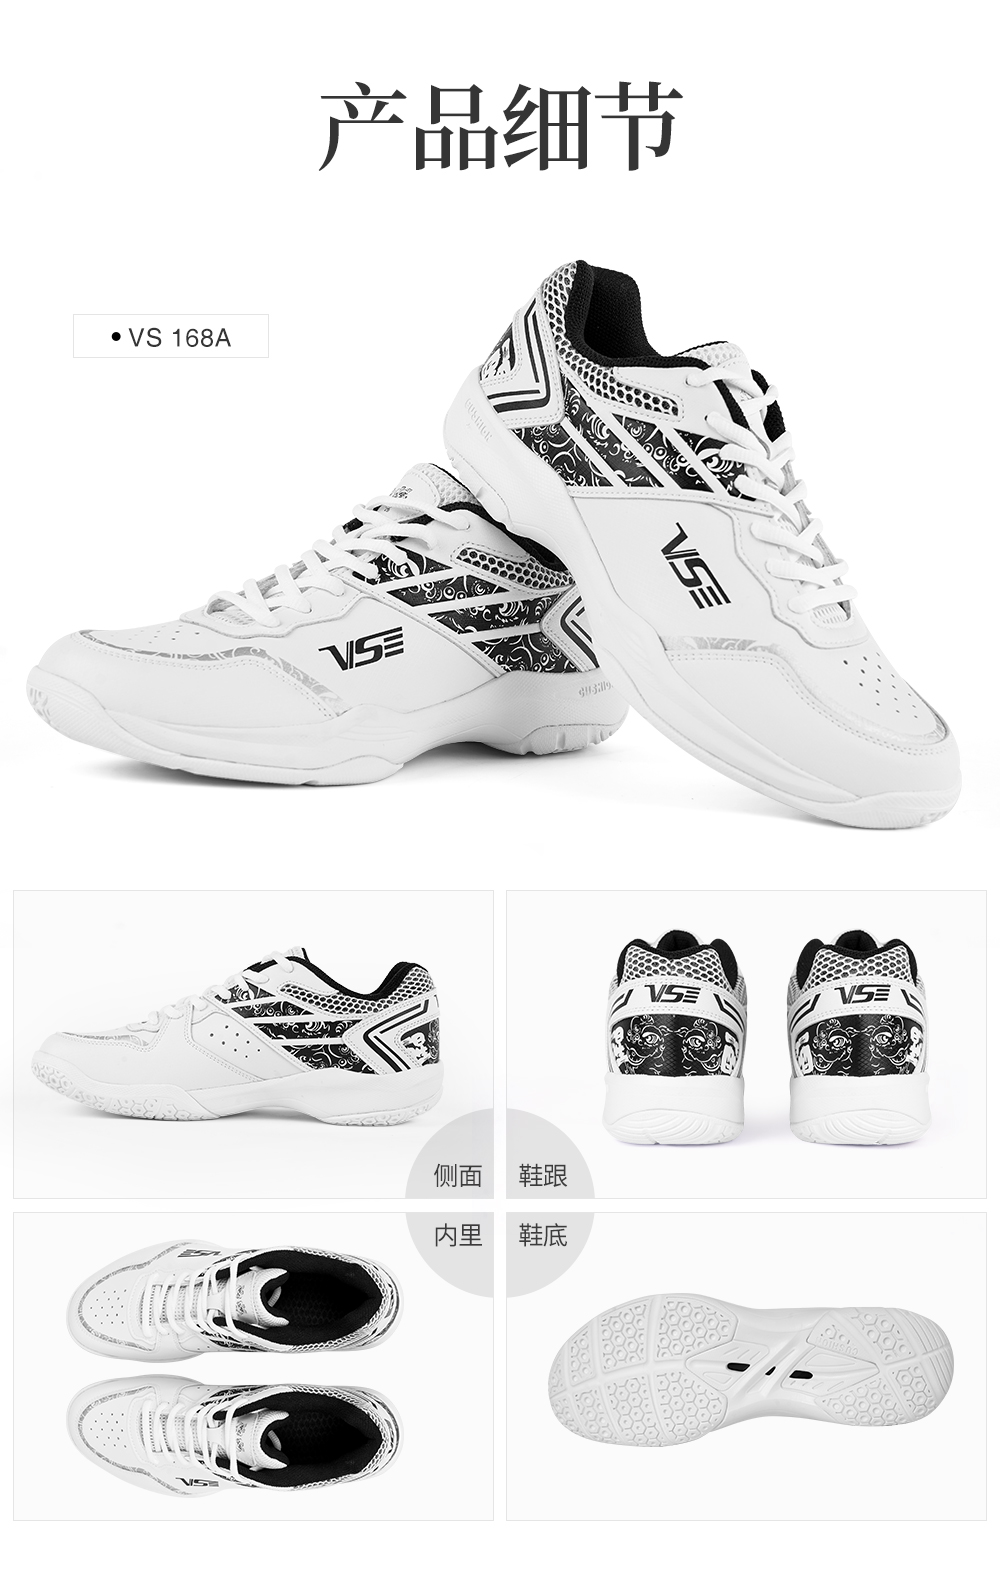 羽毛球鞋-VS168-详情-白色_09.jpg